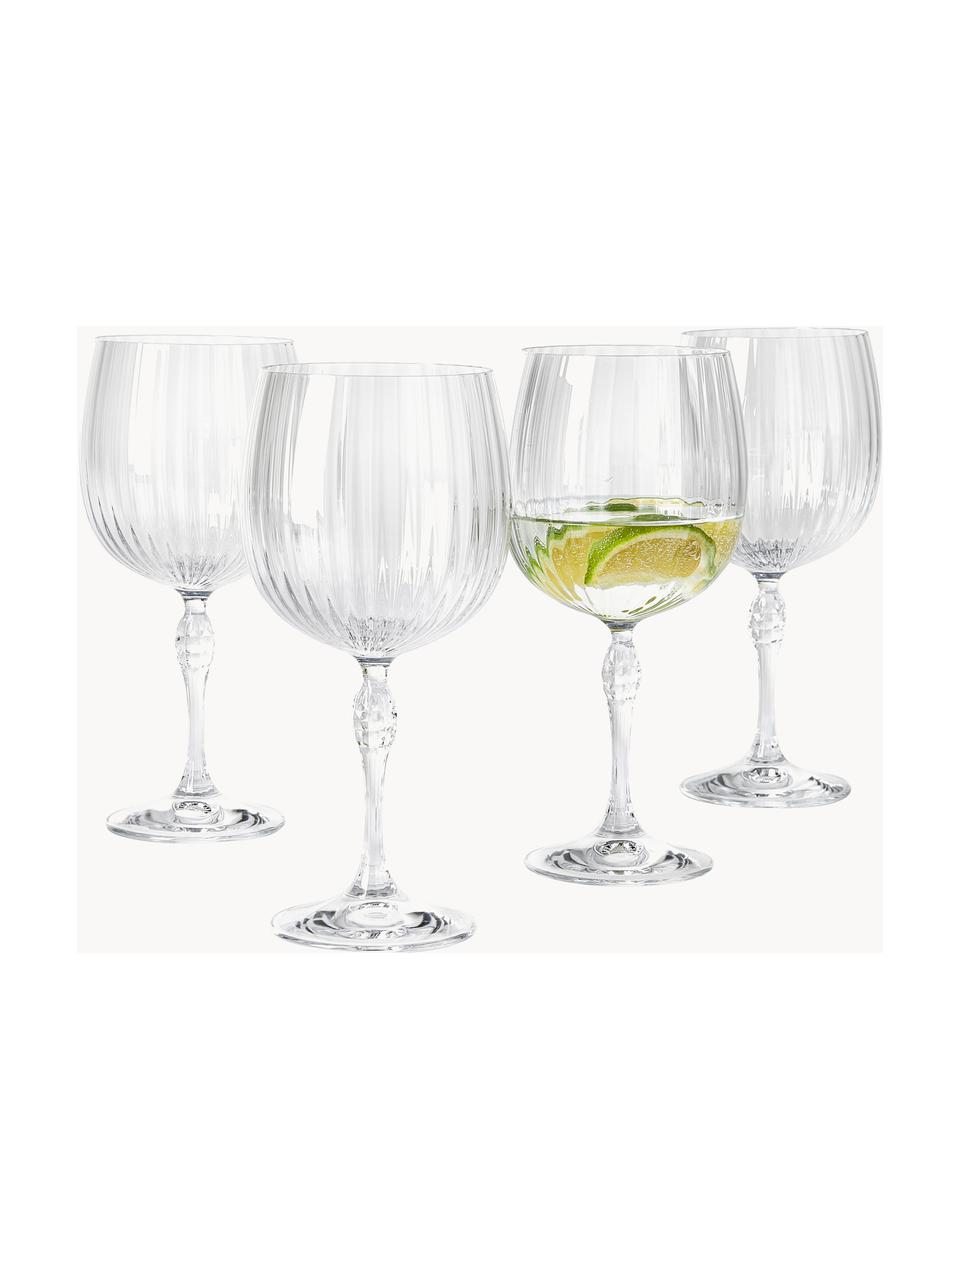 Gin glazen America's Cocktail met groefstructuur, 4 stuks, Glas, Transparant, Ø 10 x H 23 cm, 700 ml